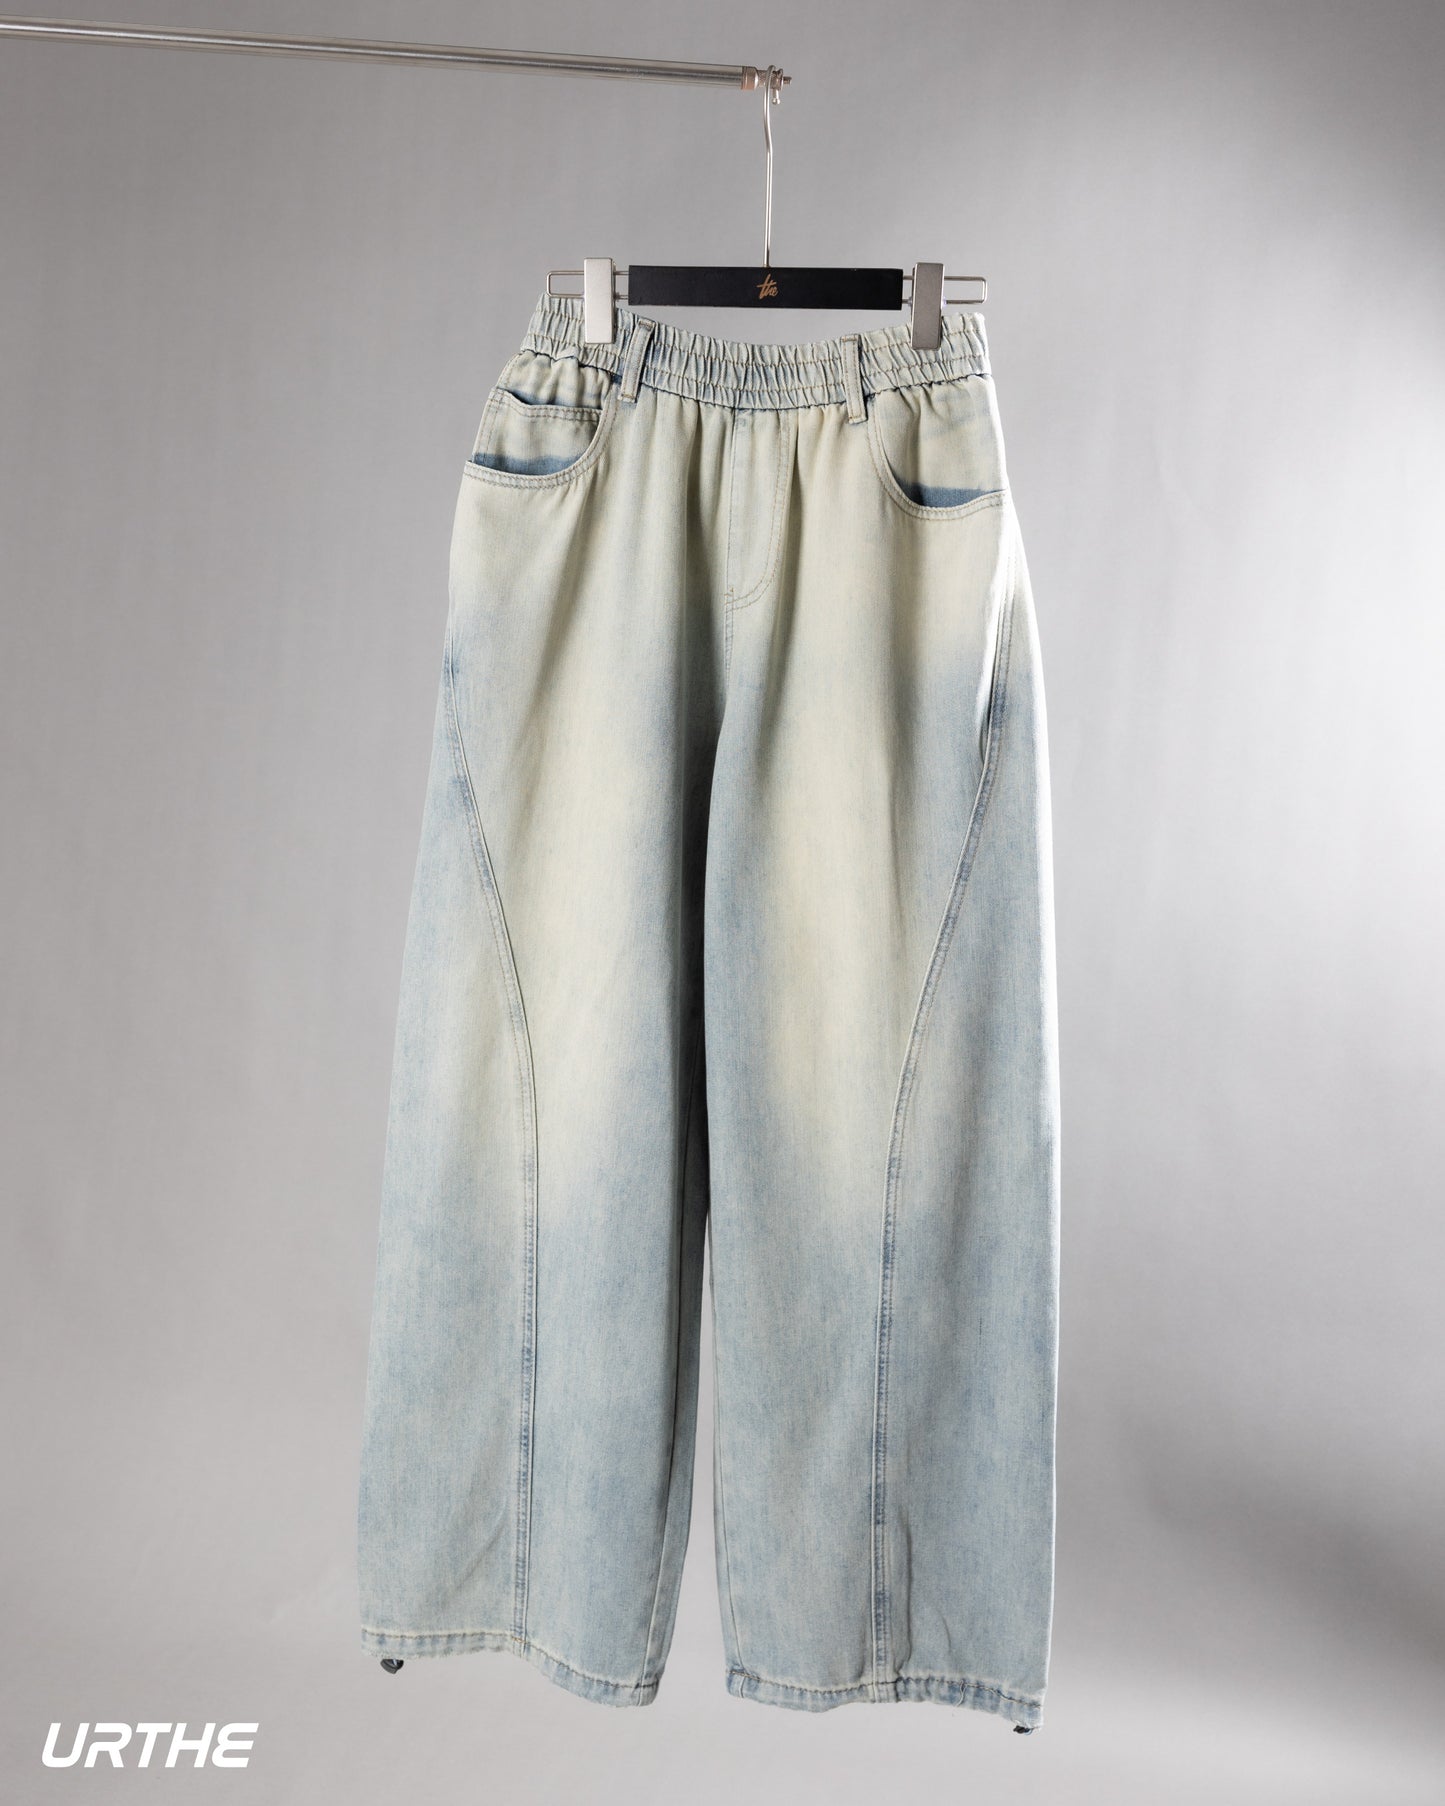 URTHE - กางเกงยีนส์ ขายาว สีฟอก รุ่น TT BLUE JEANS